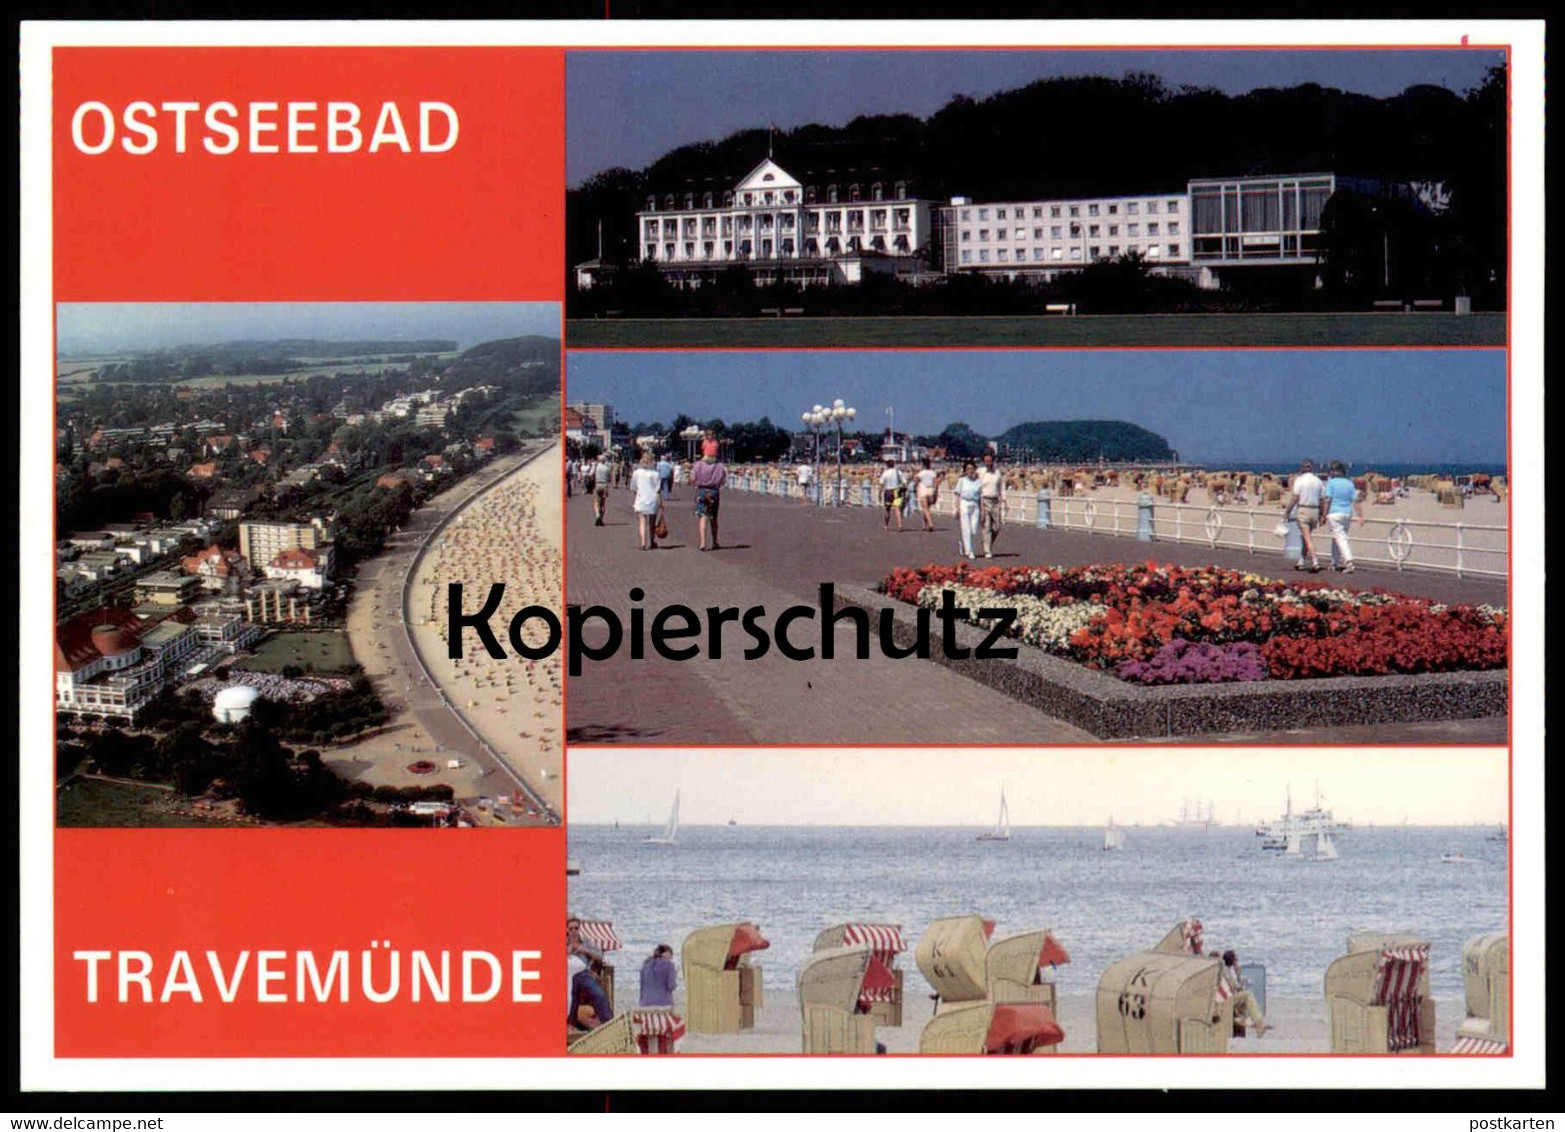 POSTKARTE TRAVEMÜNDE BLUMEN Flowers Fleurs Strandkorb Beach Chair Luebeck-Travemuende Cpa Postcard AK Ansichtskarte - Lübeck-Travemünde